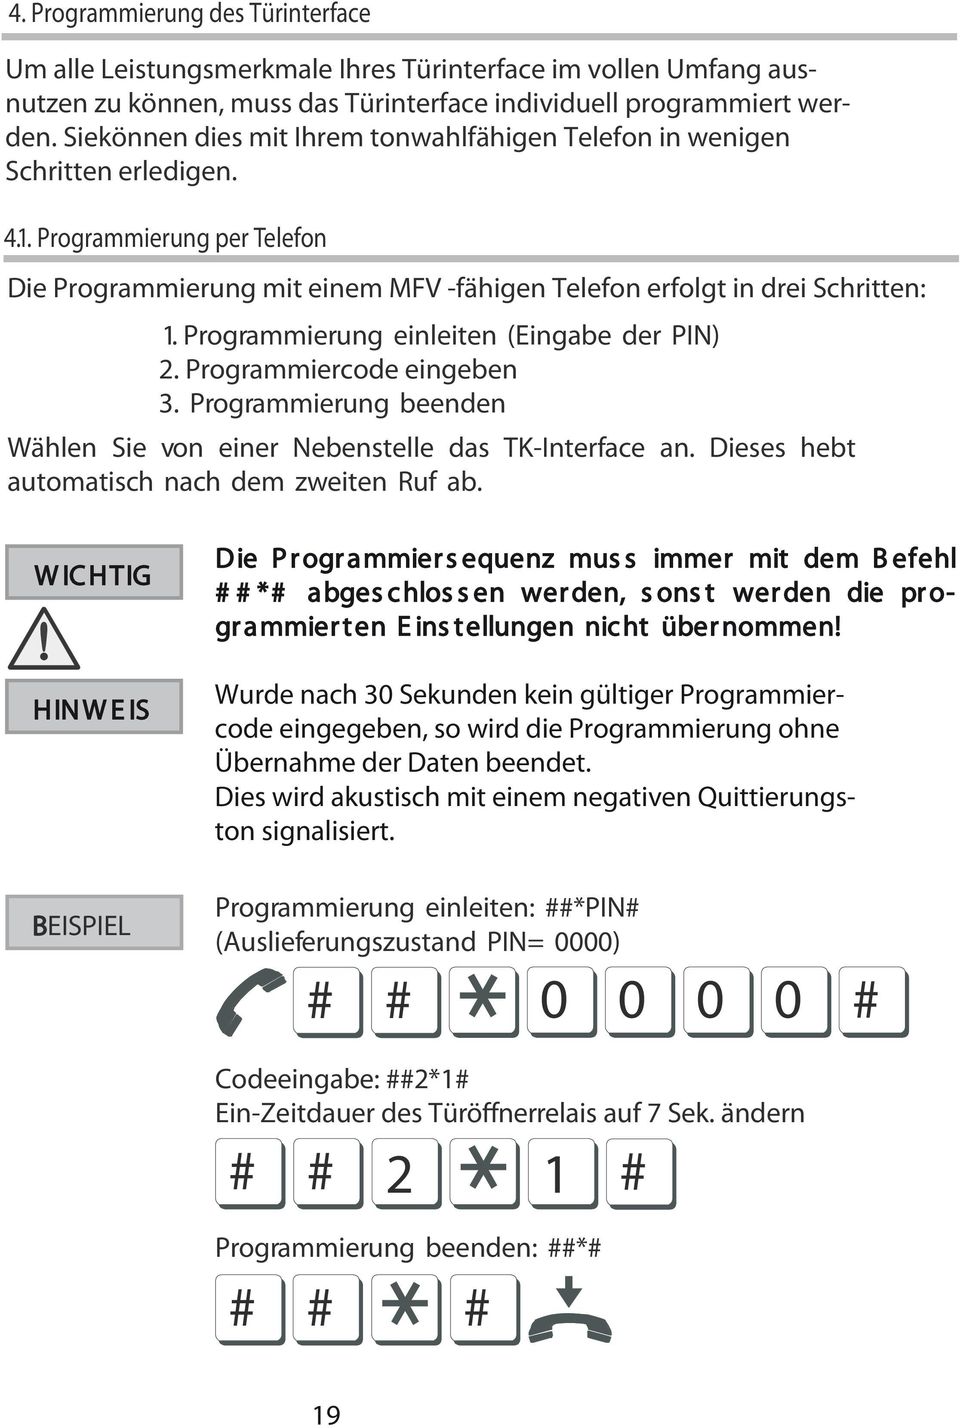 Programmierung einleiten (Eingabe der PIN) 2. Programmiercode eingeben 3. Programmierung beenden Wählen Sie von einer Nebenstelle das TK-Interface an. Dieses hebt automatisch nach dem zweiten Ruf ab.